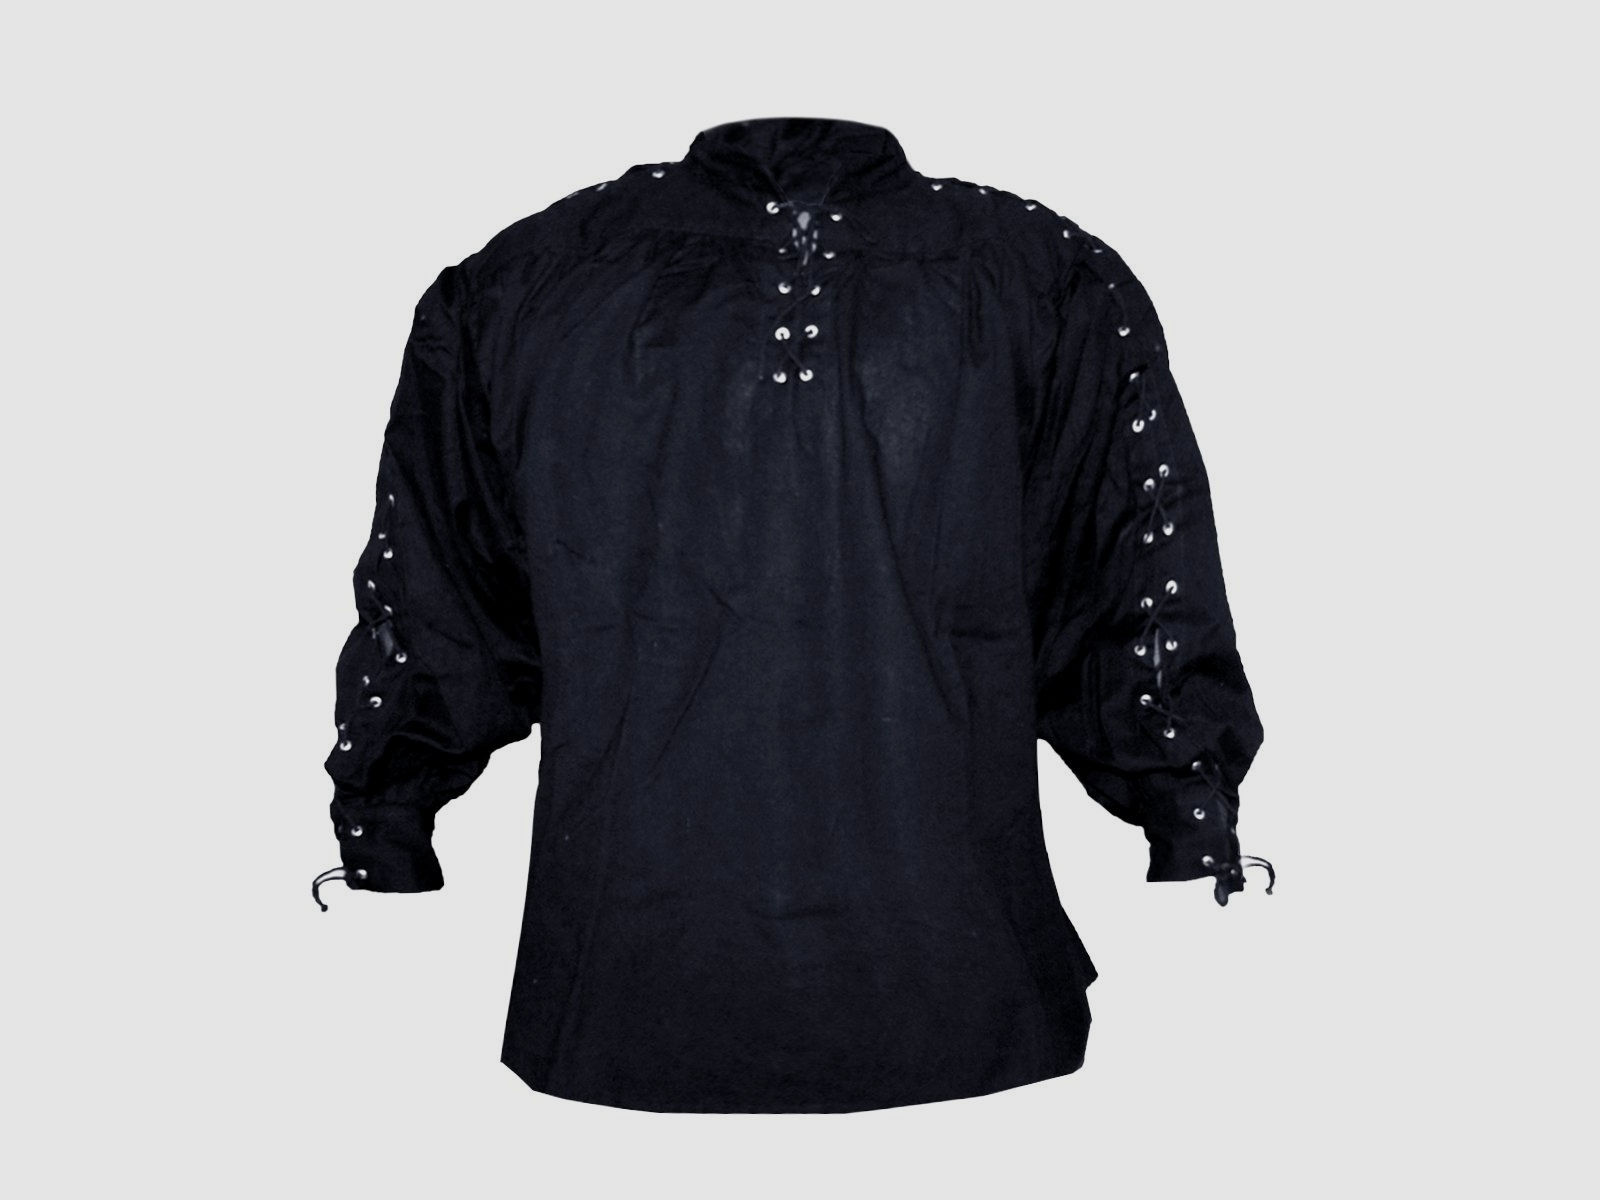 Kragenloses Baumwollhemd (geschnürter Hals & Ärmel) – schwarz, Größe S | 71614